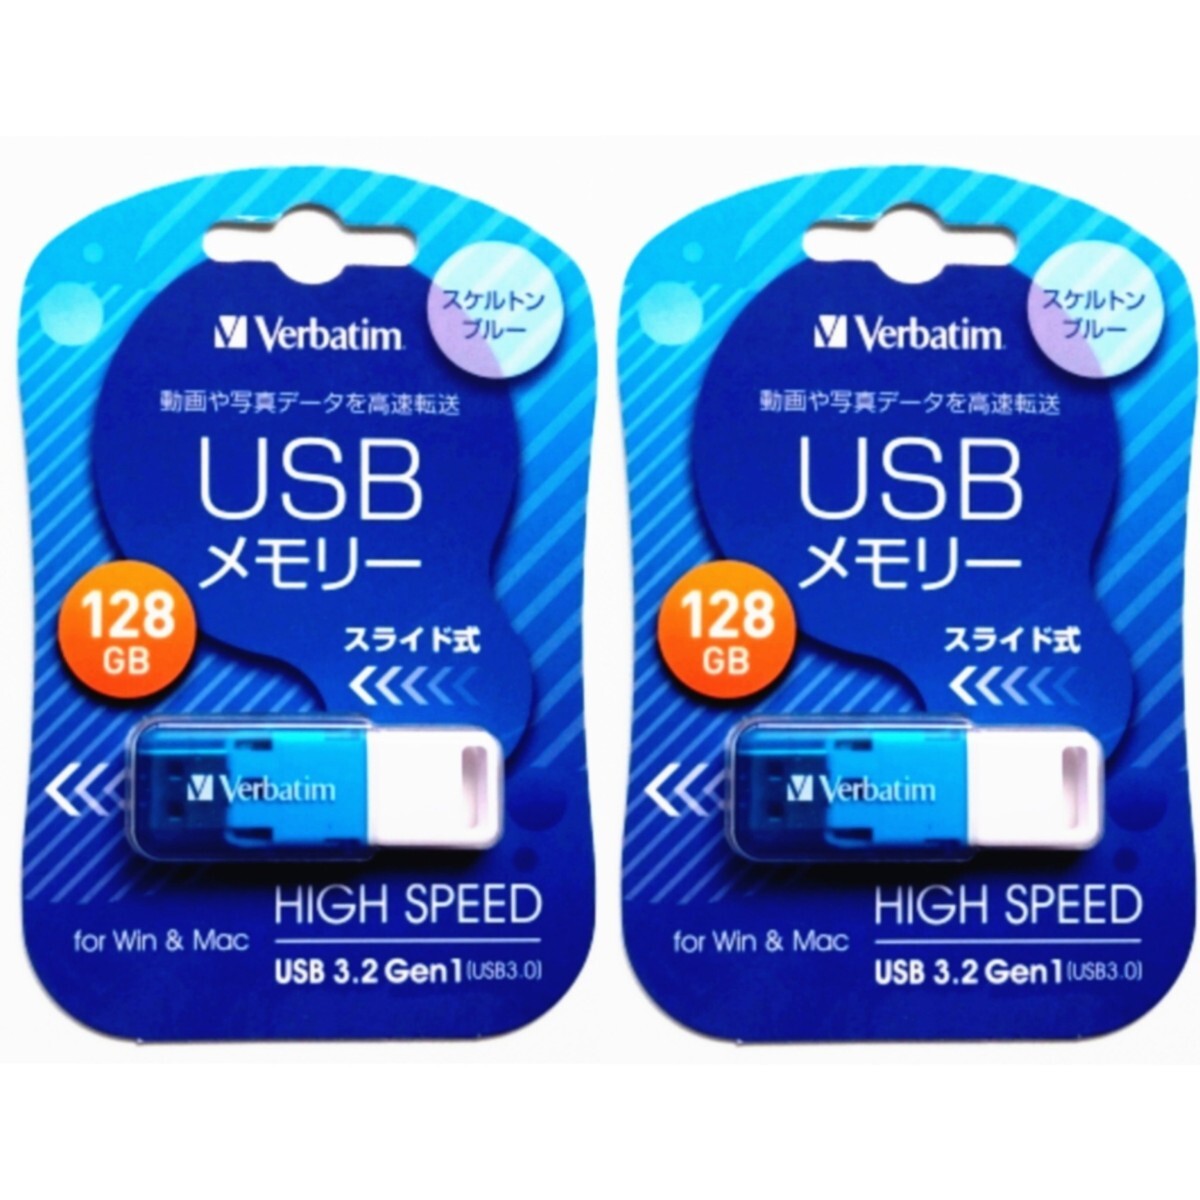 スライド式USBメモリ 128GB USB3.1(Gen1) USBSSG128GBV1 2セット【1円スタート出品・新品・送料無料】の画像1